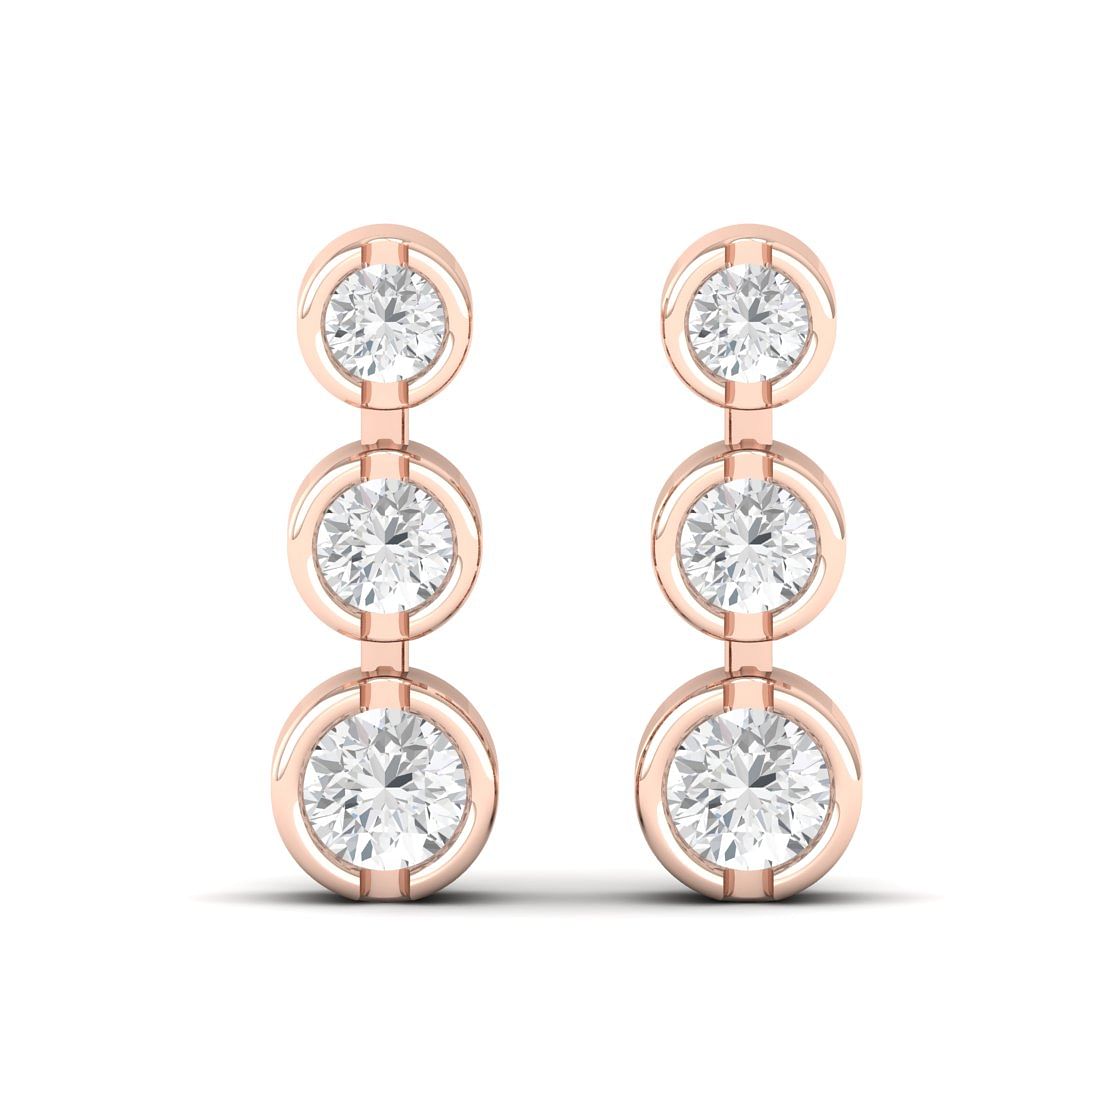 Gianna Diamond Earrings Rose Gold Earring For Anniversary Gift